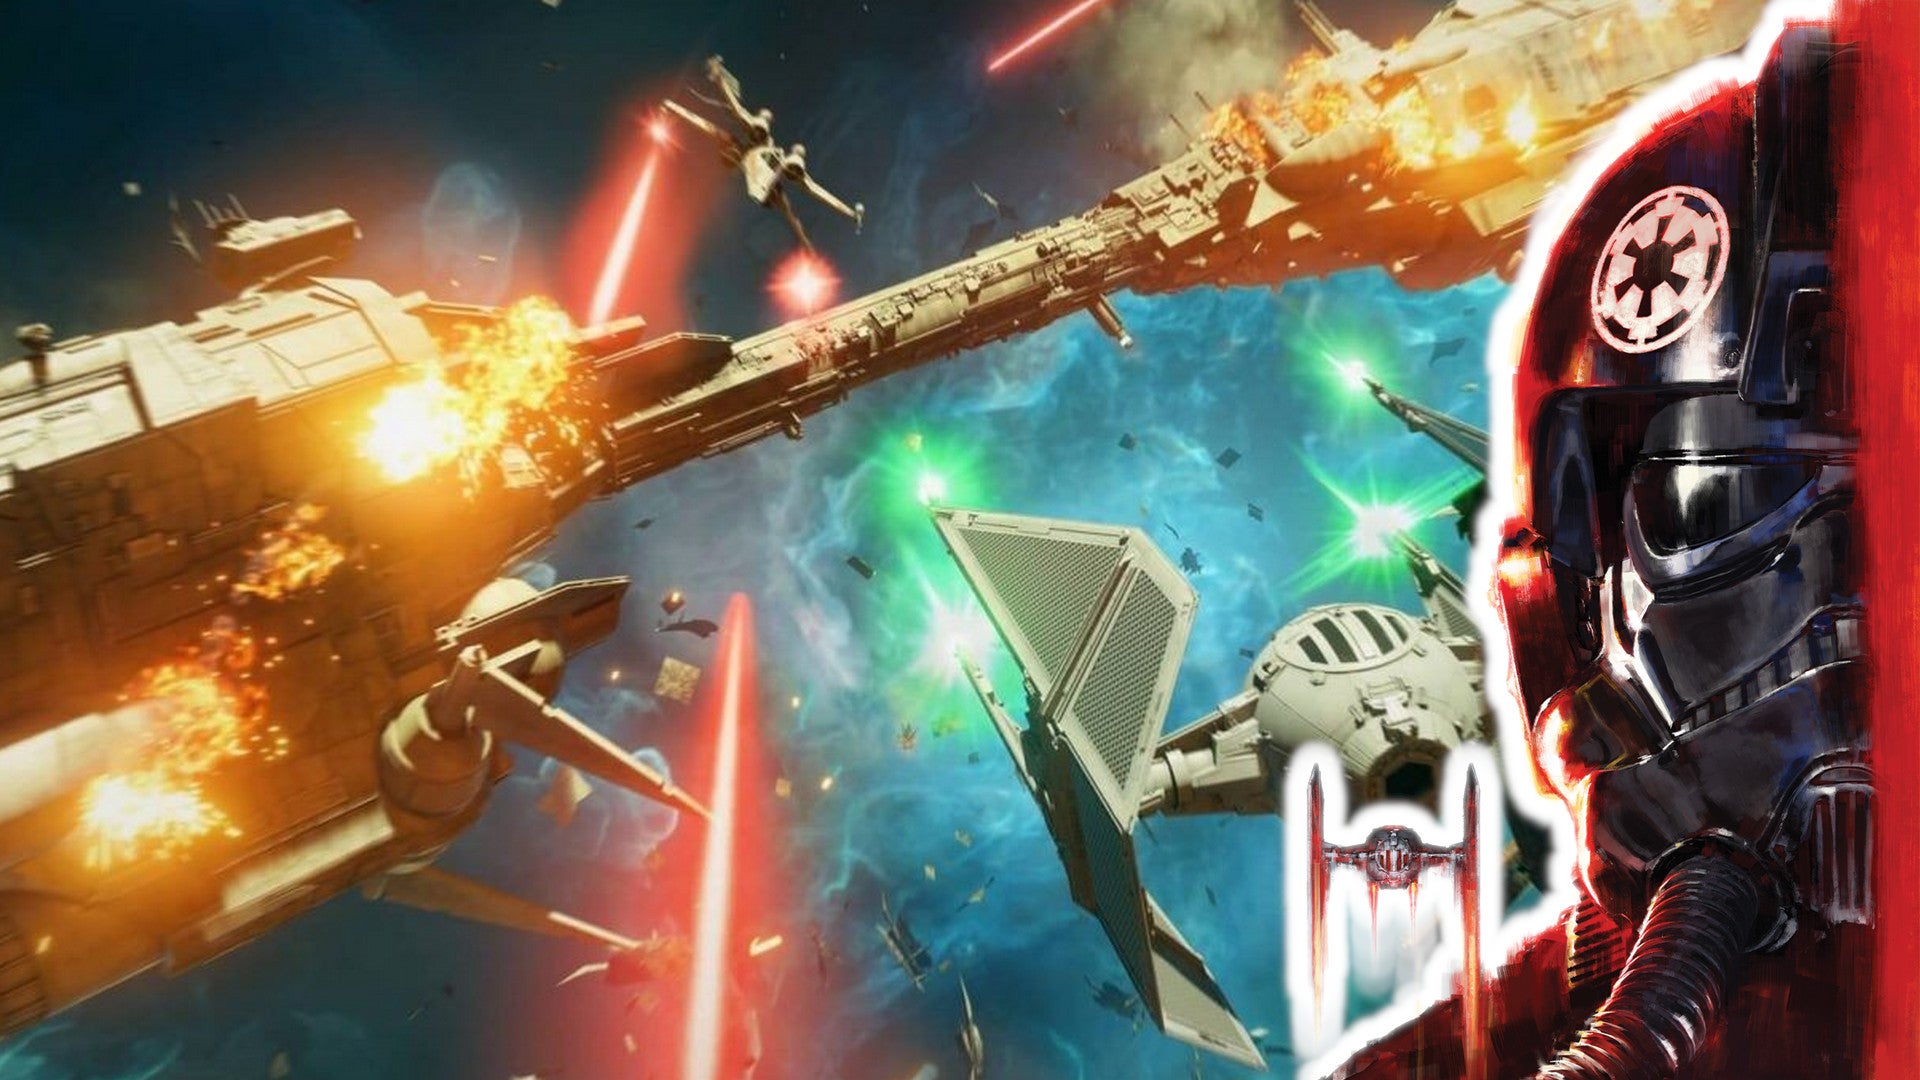 Star Wars Squadrons geschenkt! Ab kommender Woche im Epic Games Store.